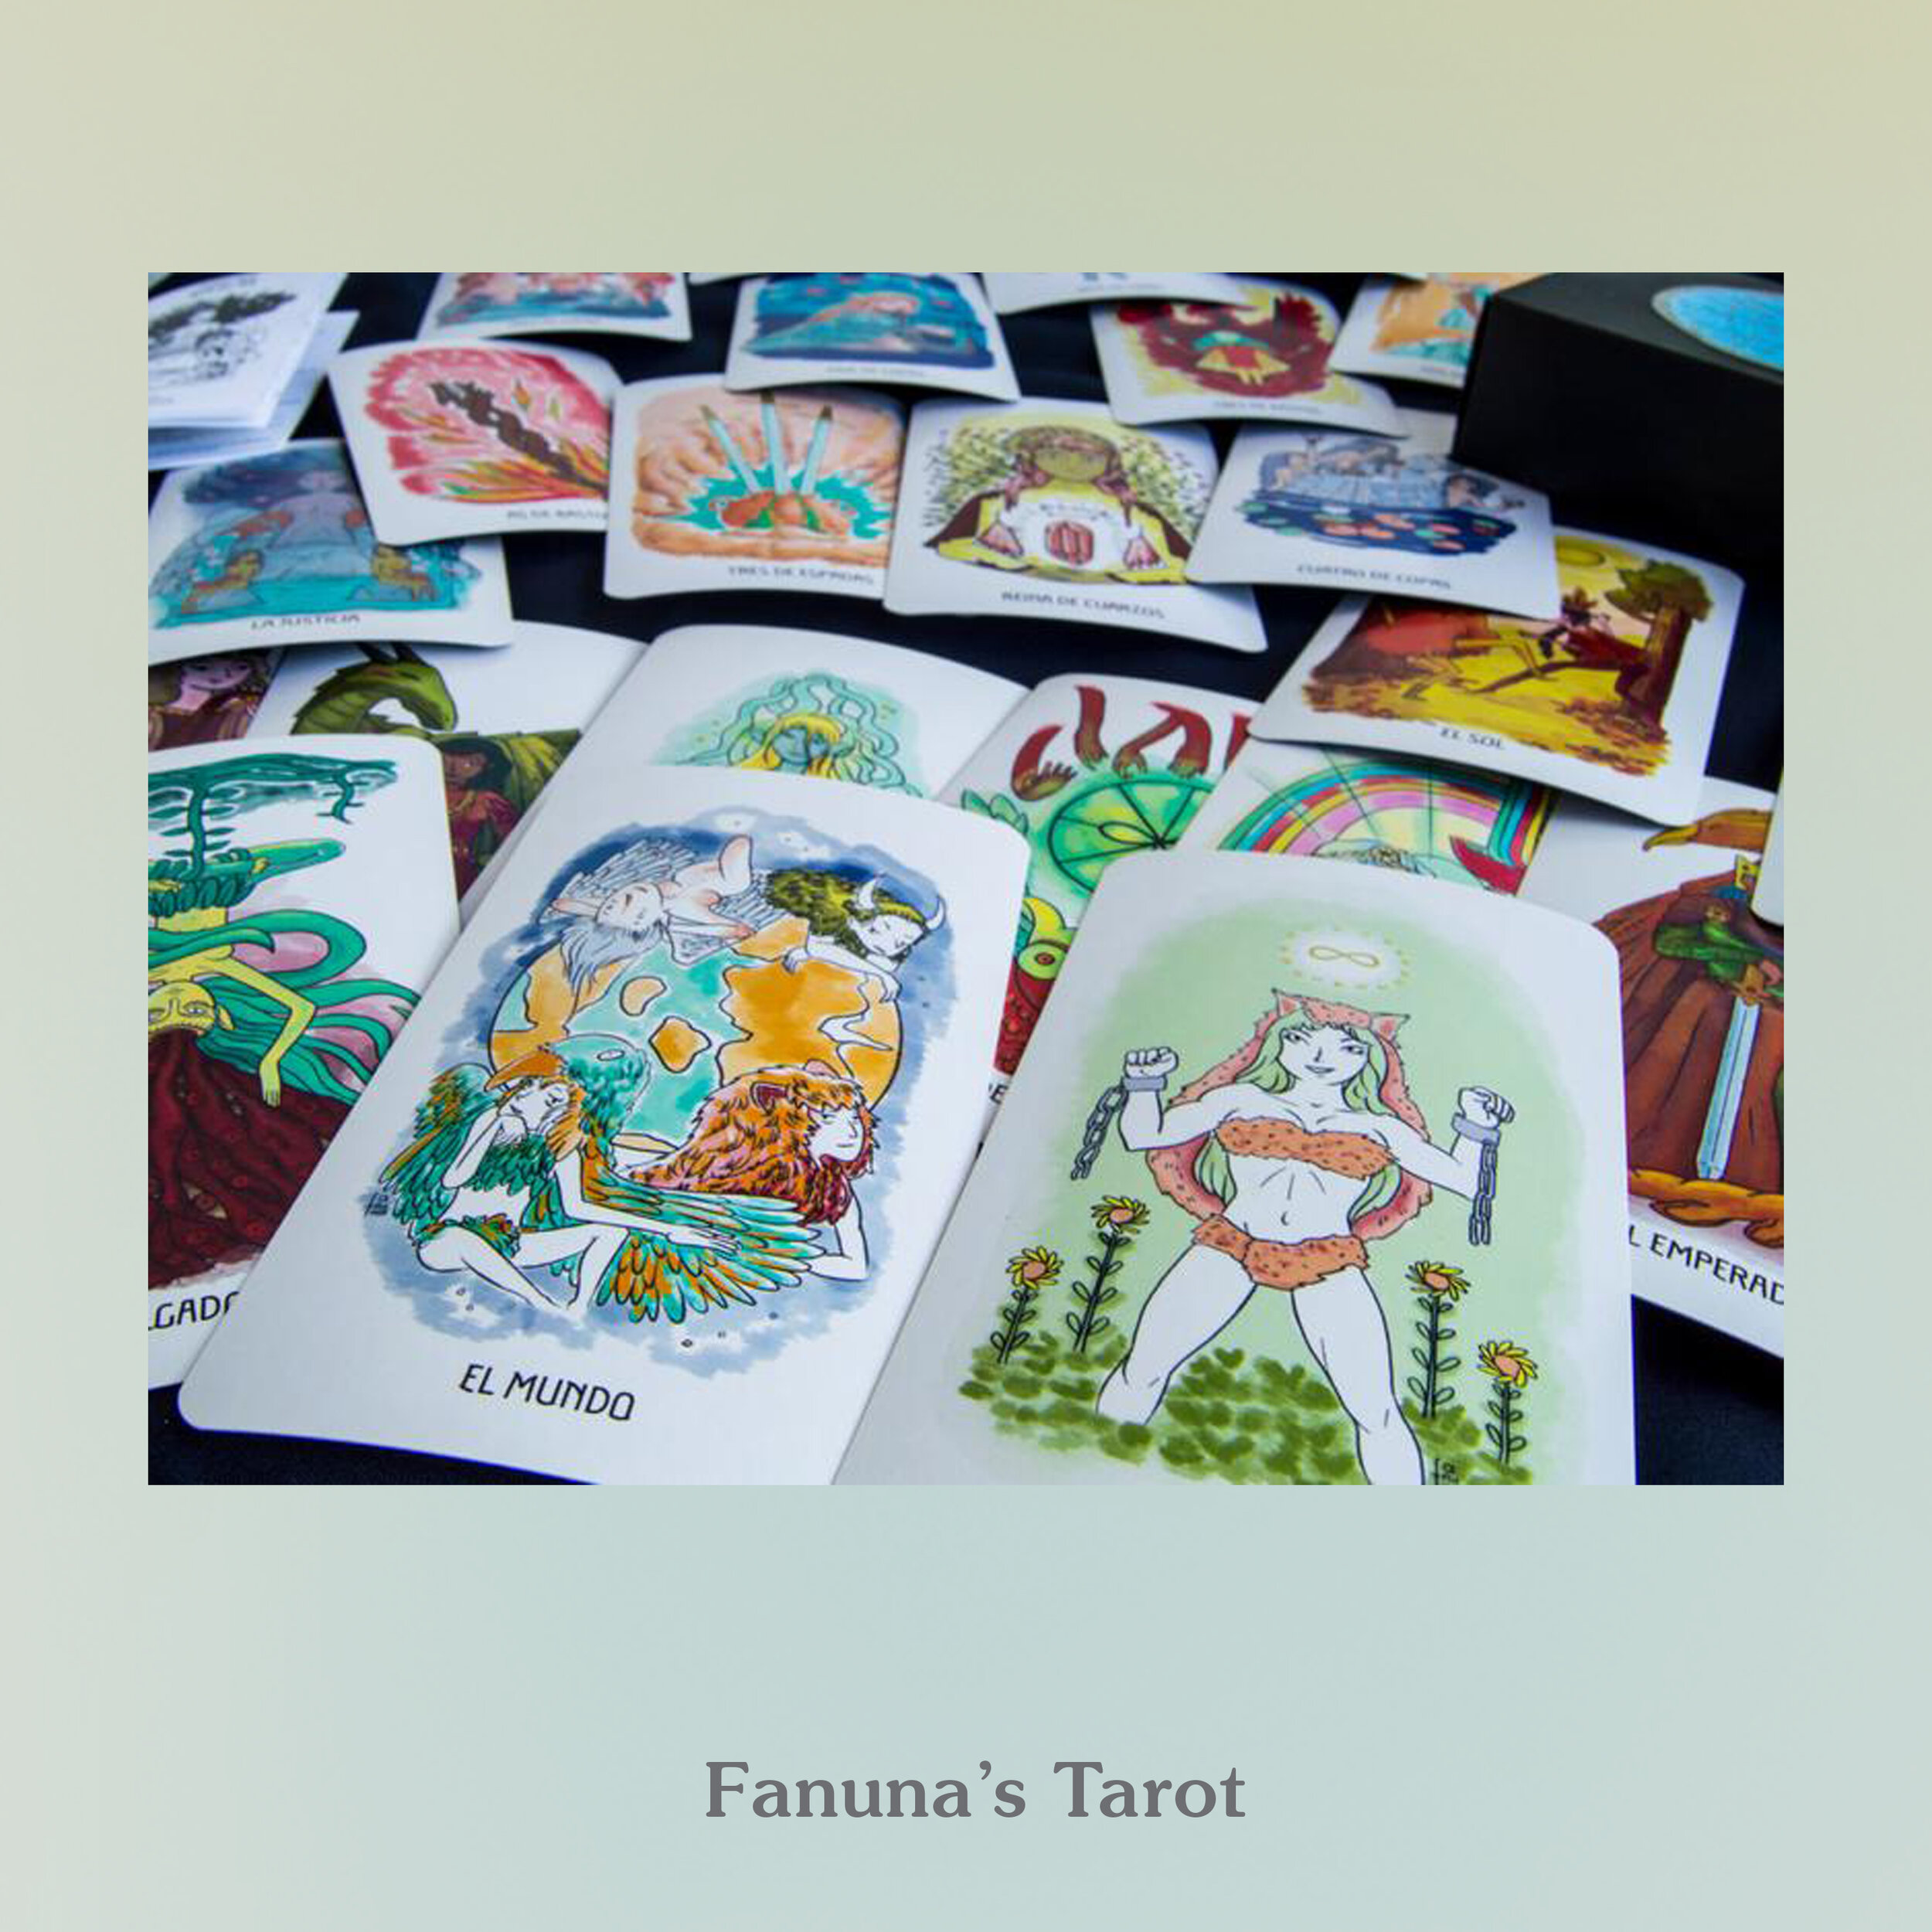 Fanuna's Tarot